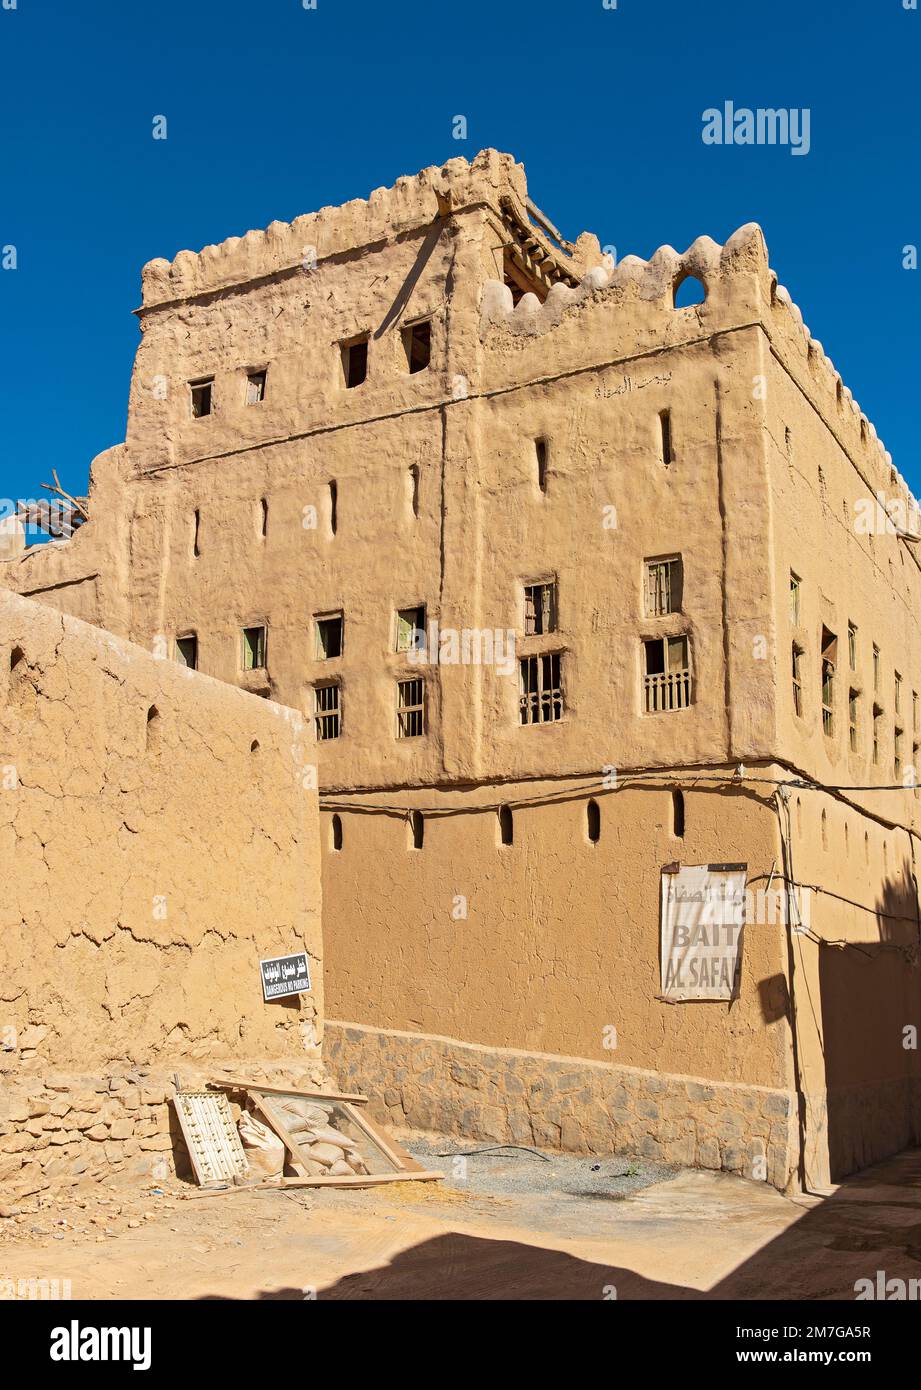 Ancienne maison en brique de boue dans la ville fantôme abandonnée d'Al Hamra, Oman Banque D'Images